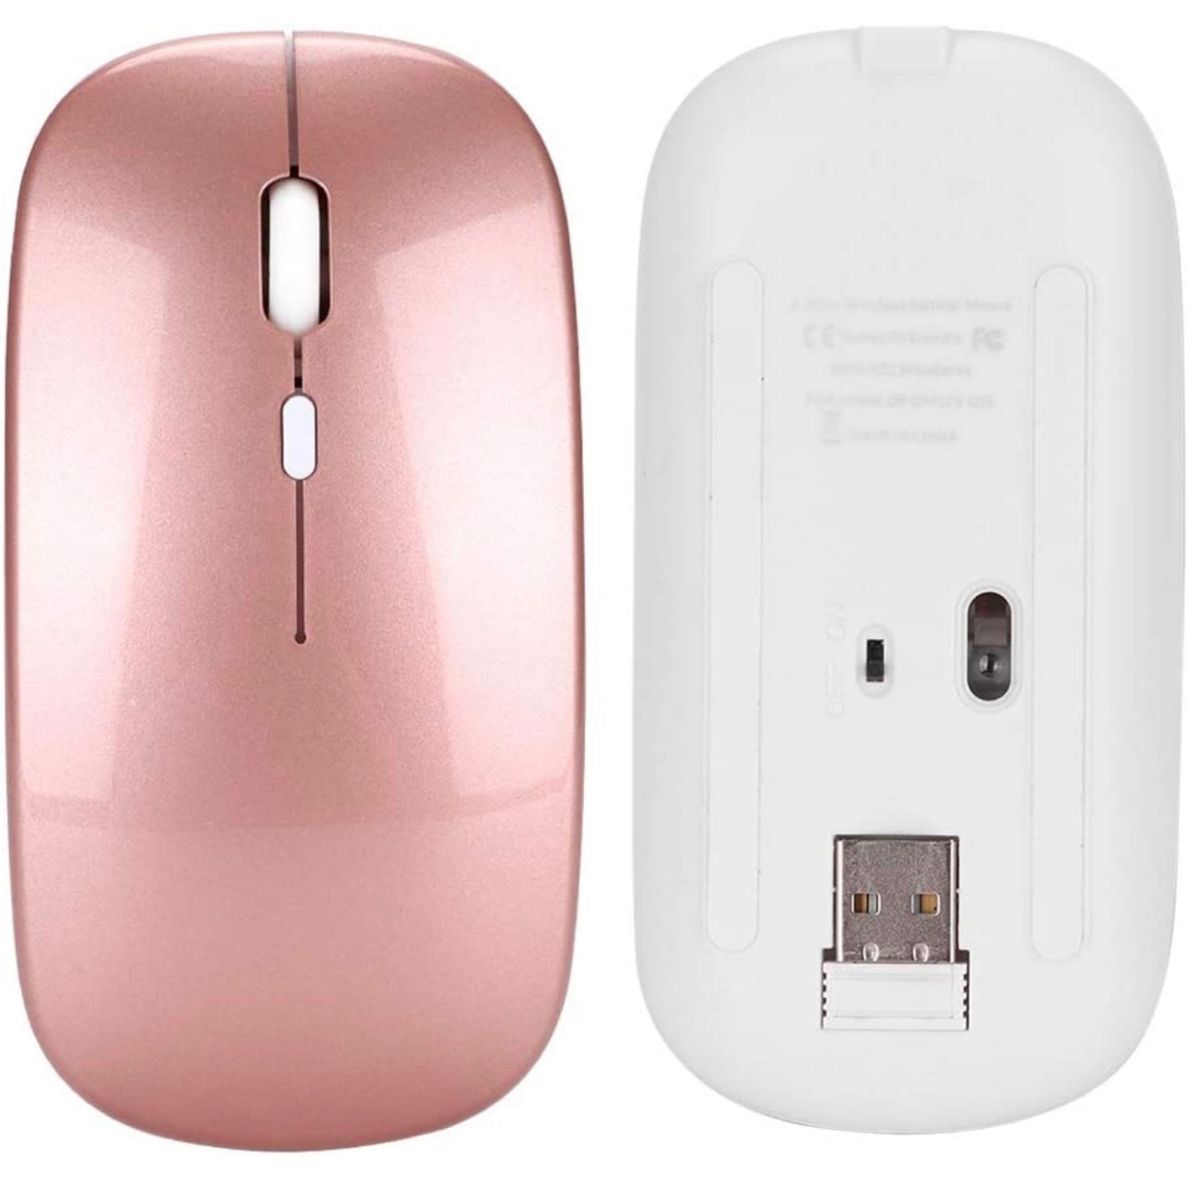 充電式無線マウス1200dpi高精度2.4Gワイヤレスマウス 超軽量 携帯便利 静音タイプ